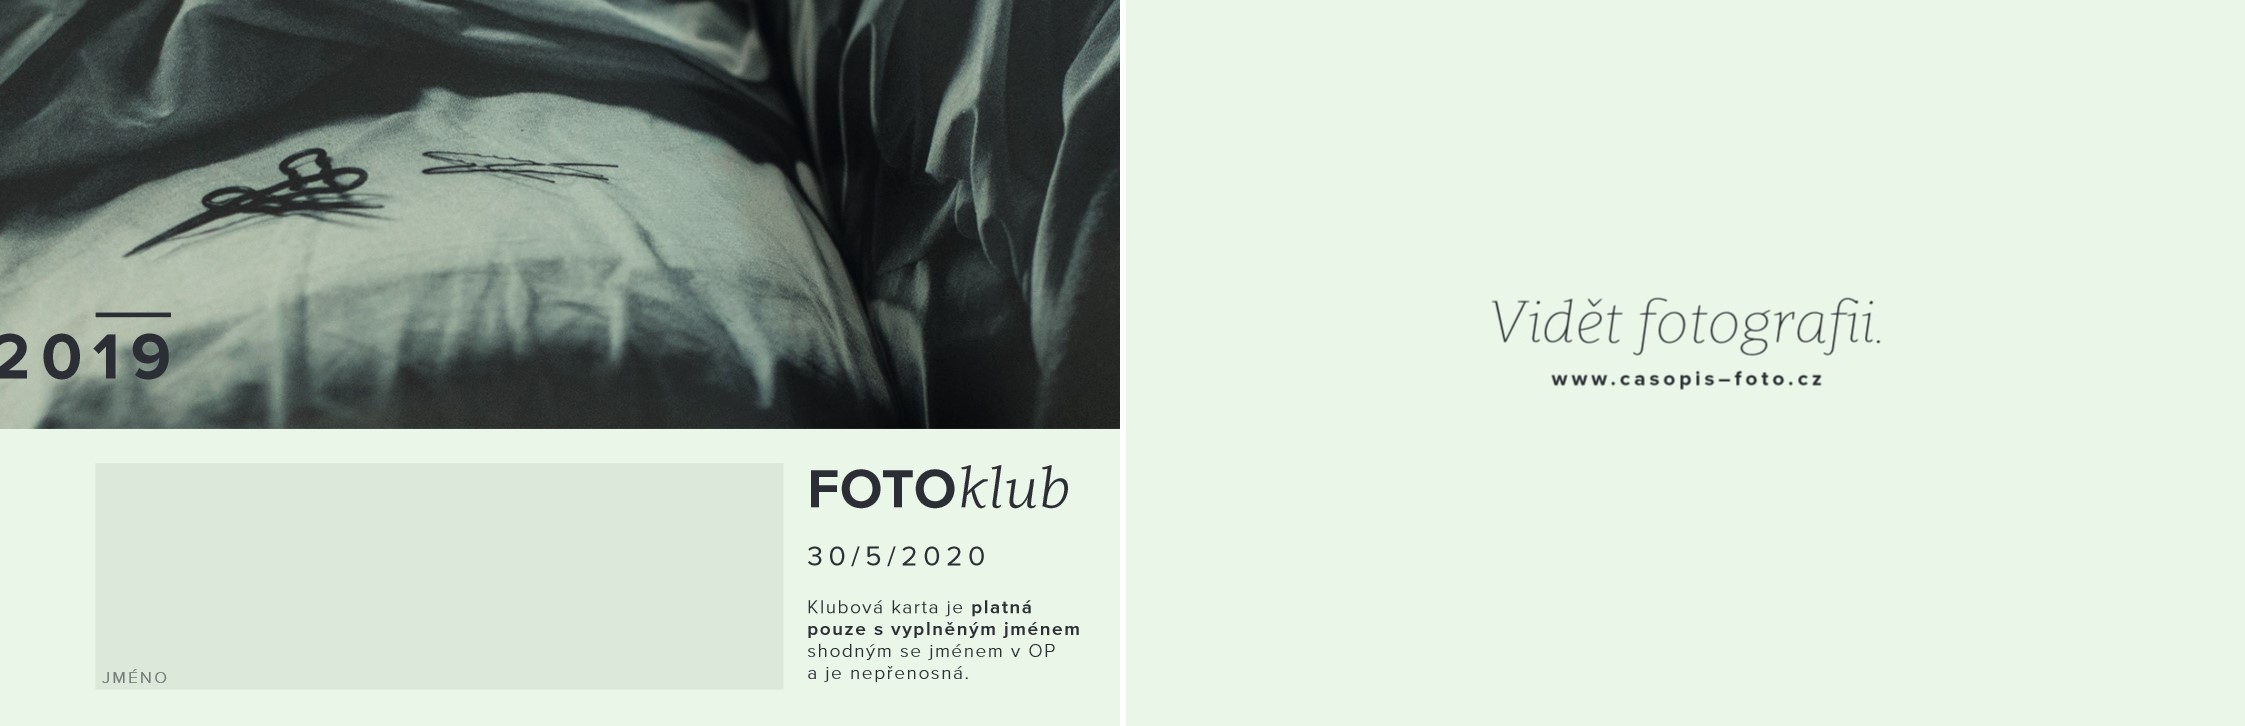 Spolupráce FotoŠkoda a časopisu FOTO - získání zlaté zákaznické karty